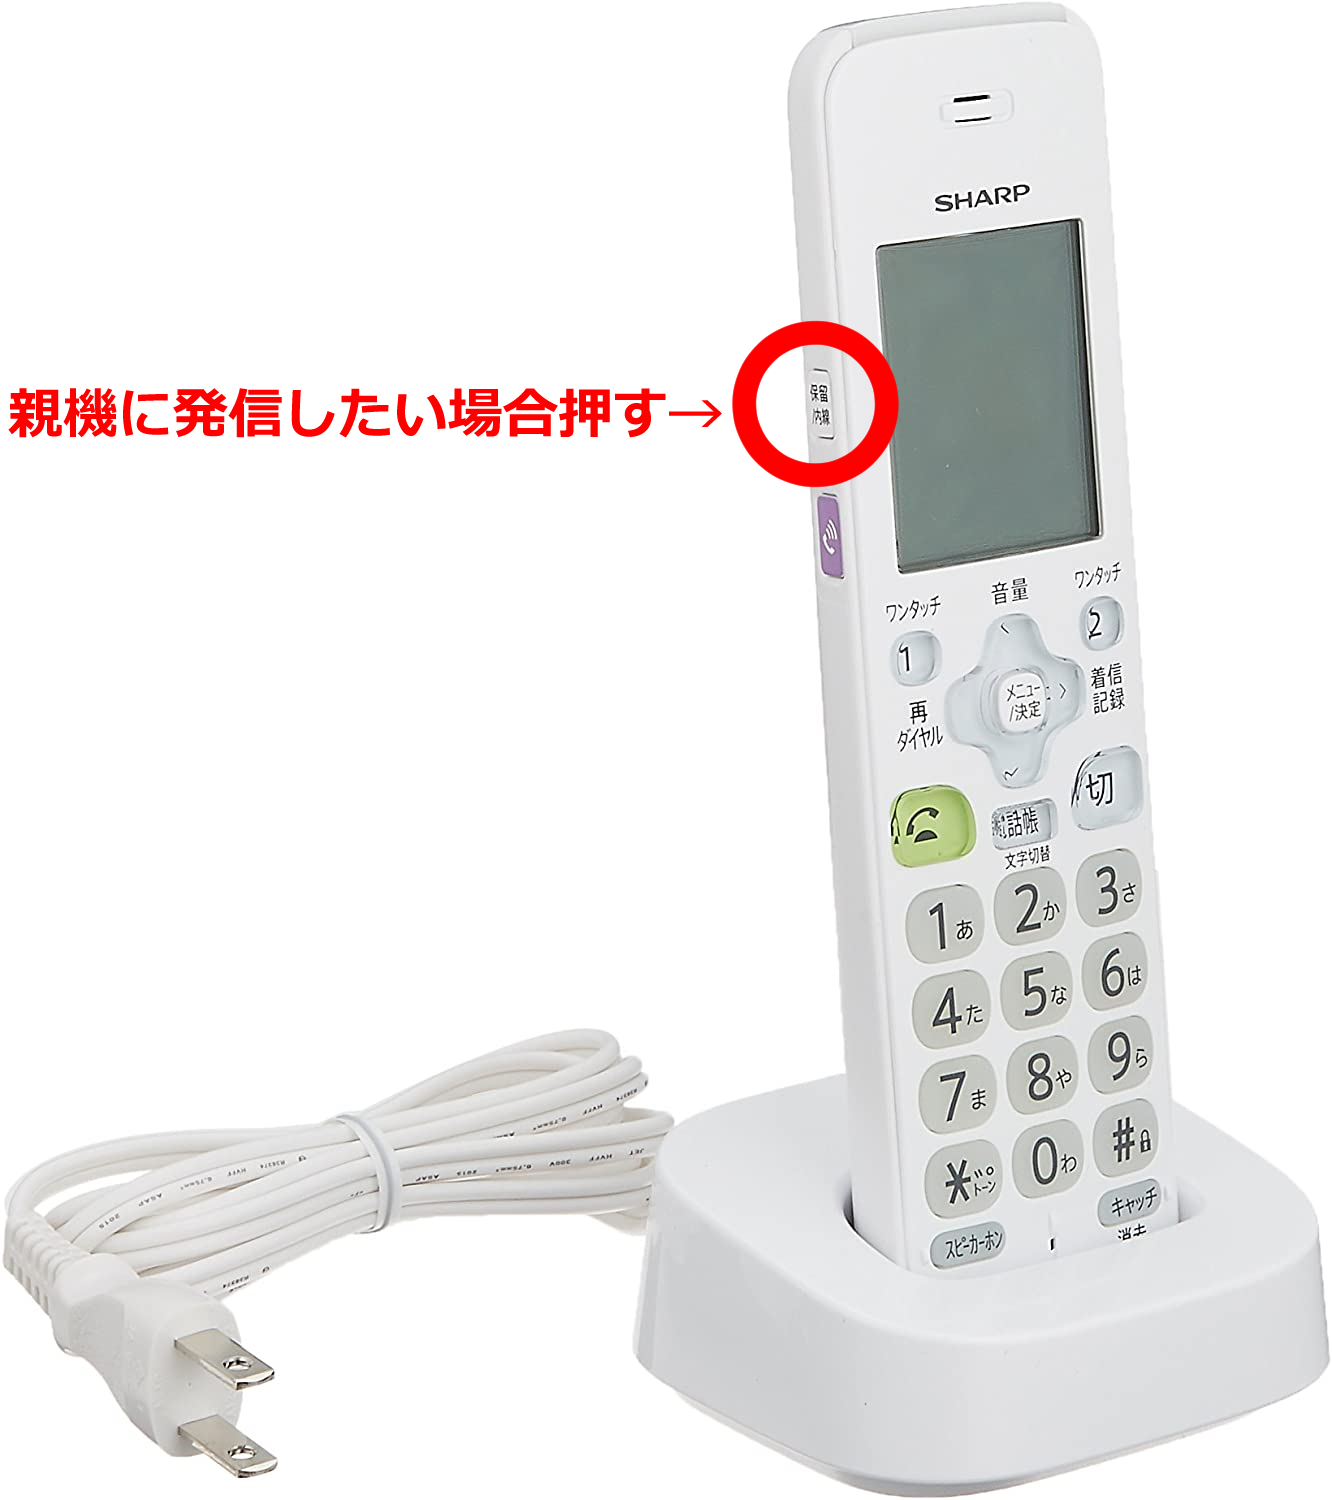 シャープ 増設子機 DECT 1.9GHz方式 JD-KT510 - 電話機・FAX